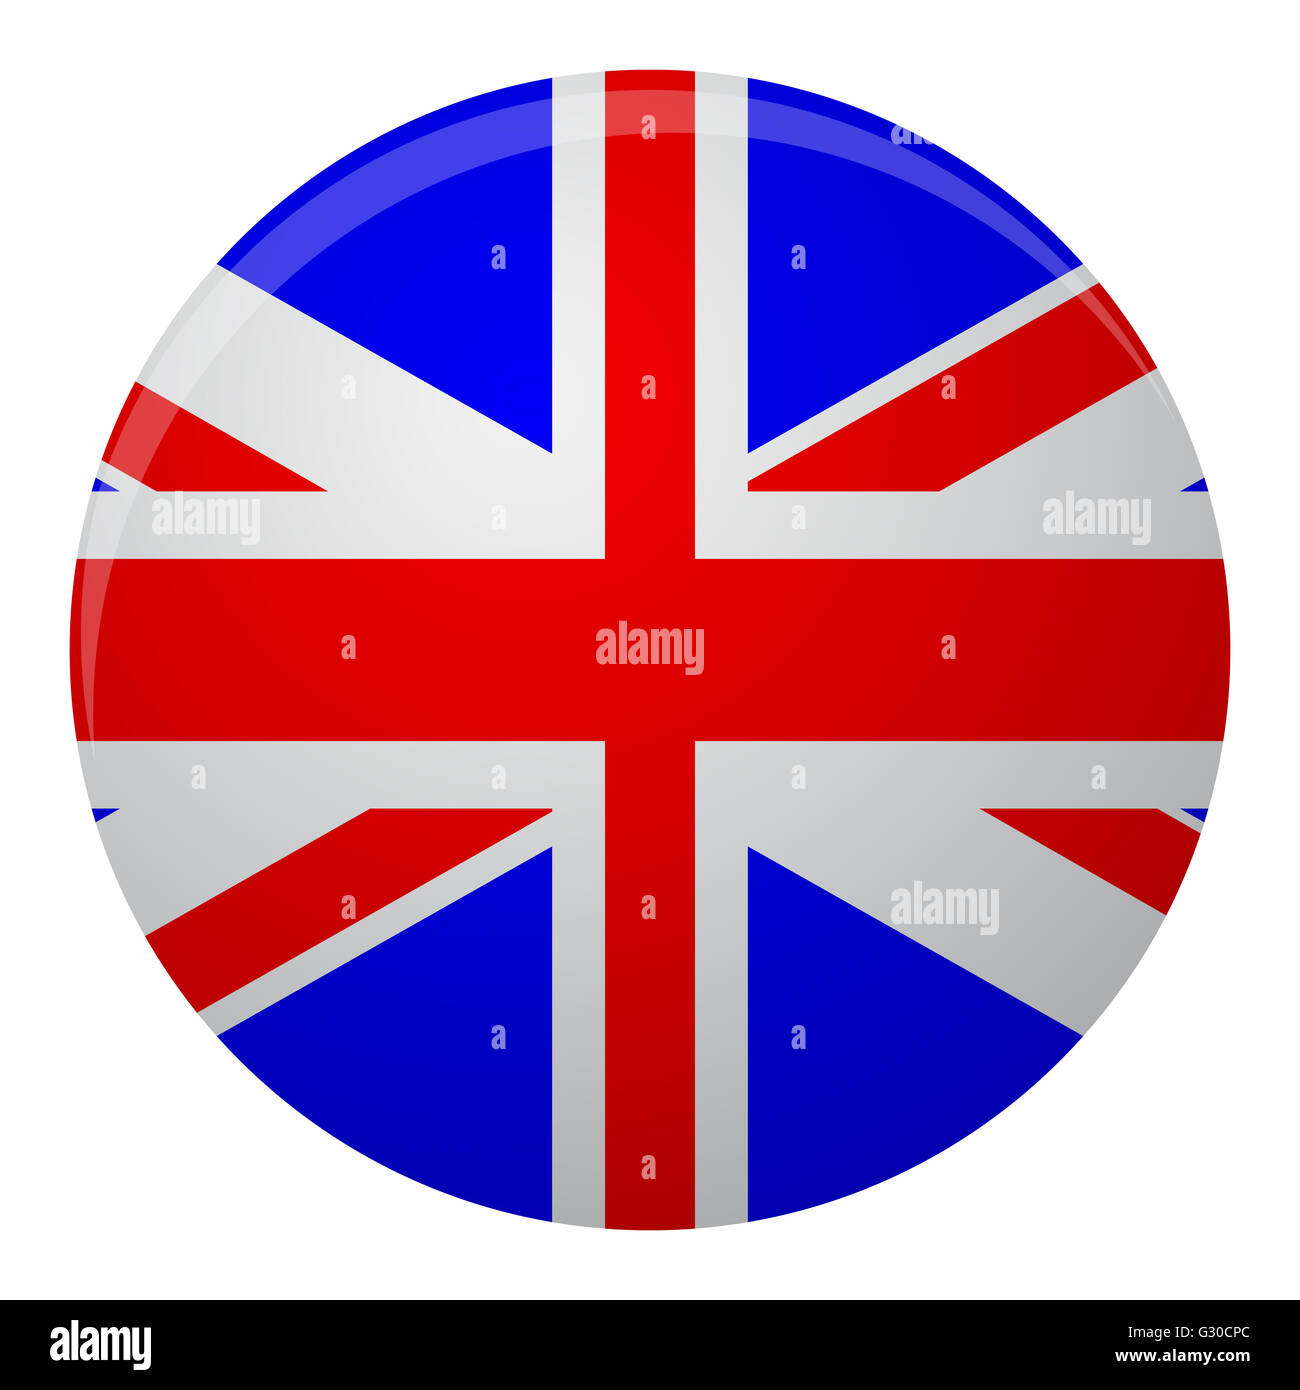 Royaume-uni de Grande-bretagne sur l'icône en forme de drapeau à plat. L'icône en forme de drapeau ou symbole d'une grande royaume de la Grande-Bretagne. Vector illustration Banque D'Images